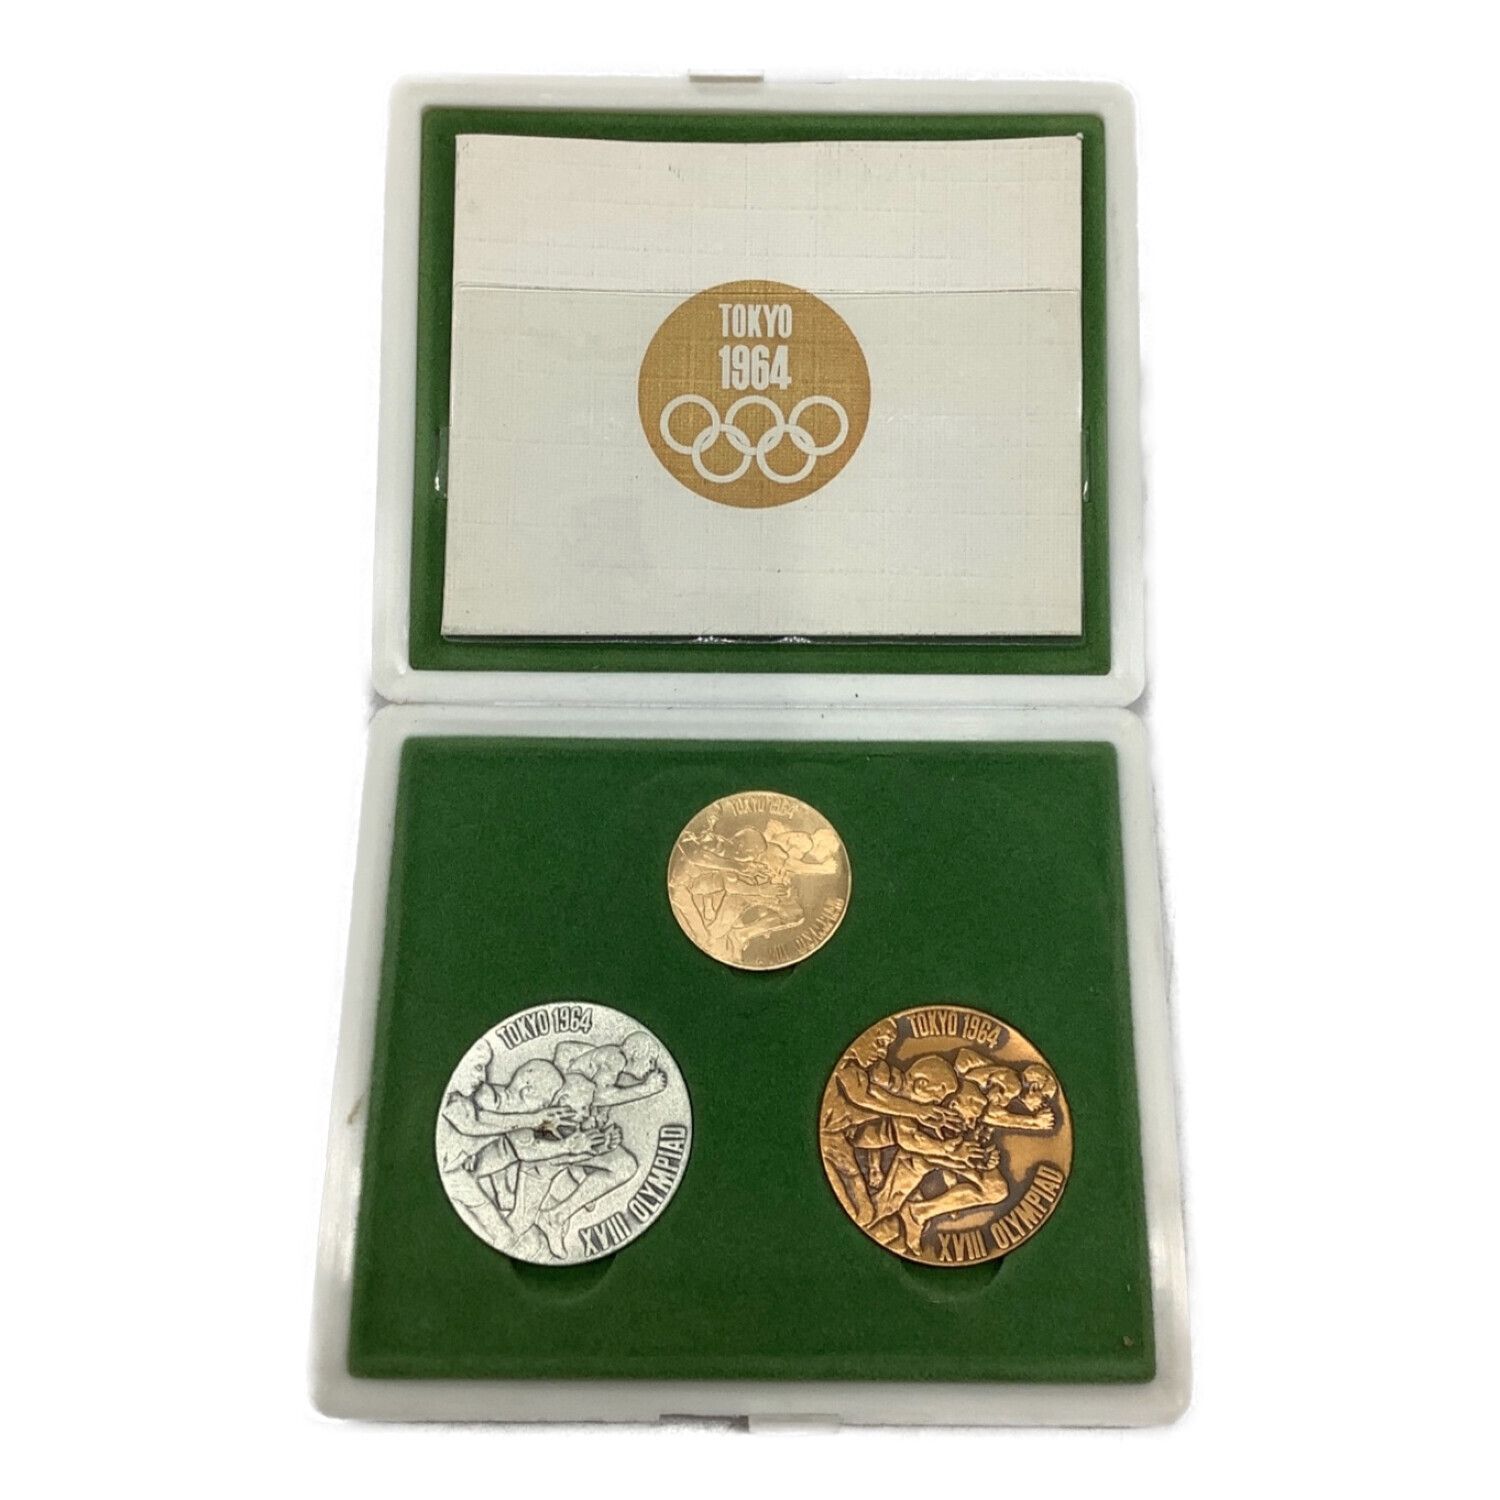 1964東京オリンピック記念メダル(金・銀・銅)セット - 貨幣